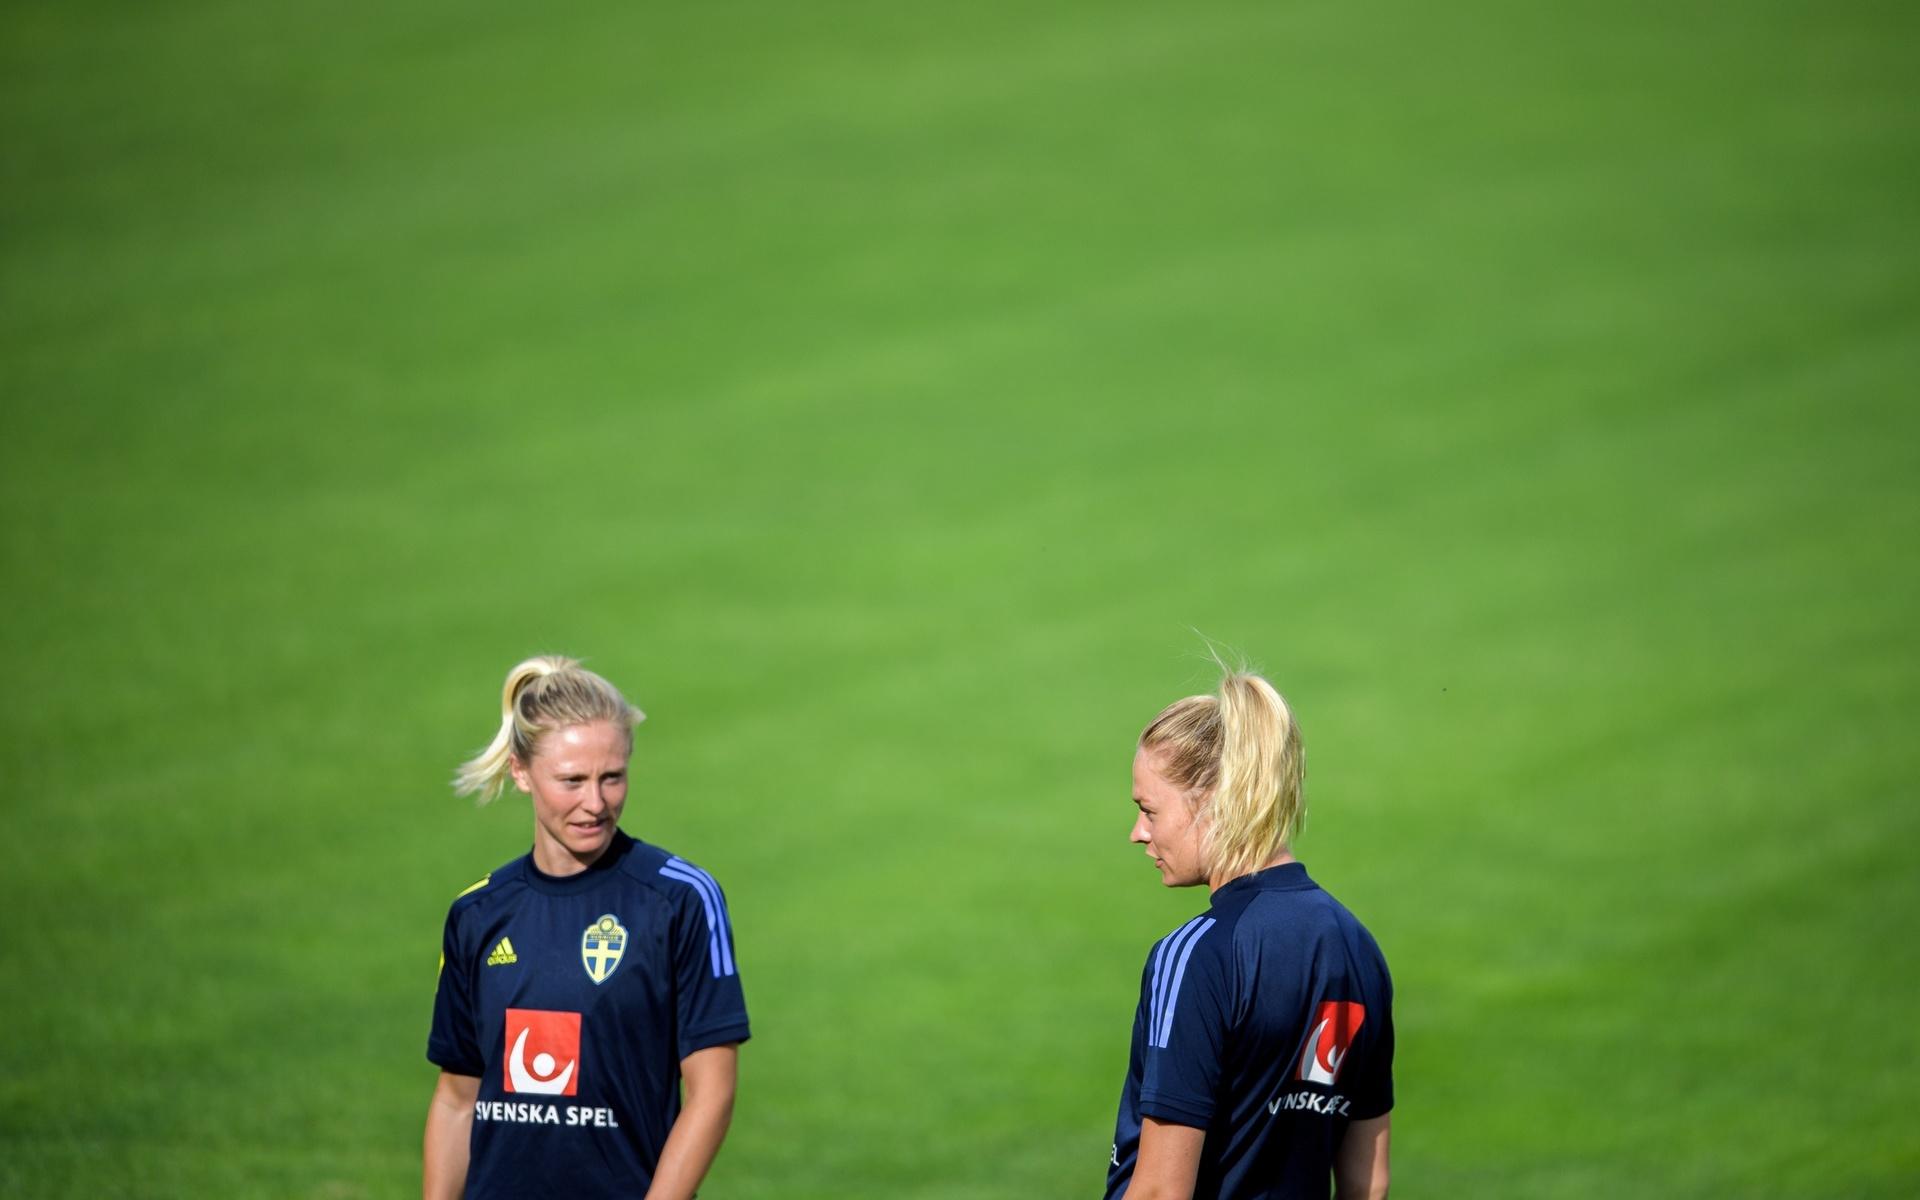 Rebecka Blomqvist och Fridolina Rolfö var lagkamrater i Wolfsburg. Blomqvist tror på Rolfö-succé i nya laget: ”Hon är en fantastisk spelare så de kommer ha god nytta av hennes speed, teknik och tillslag”.